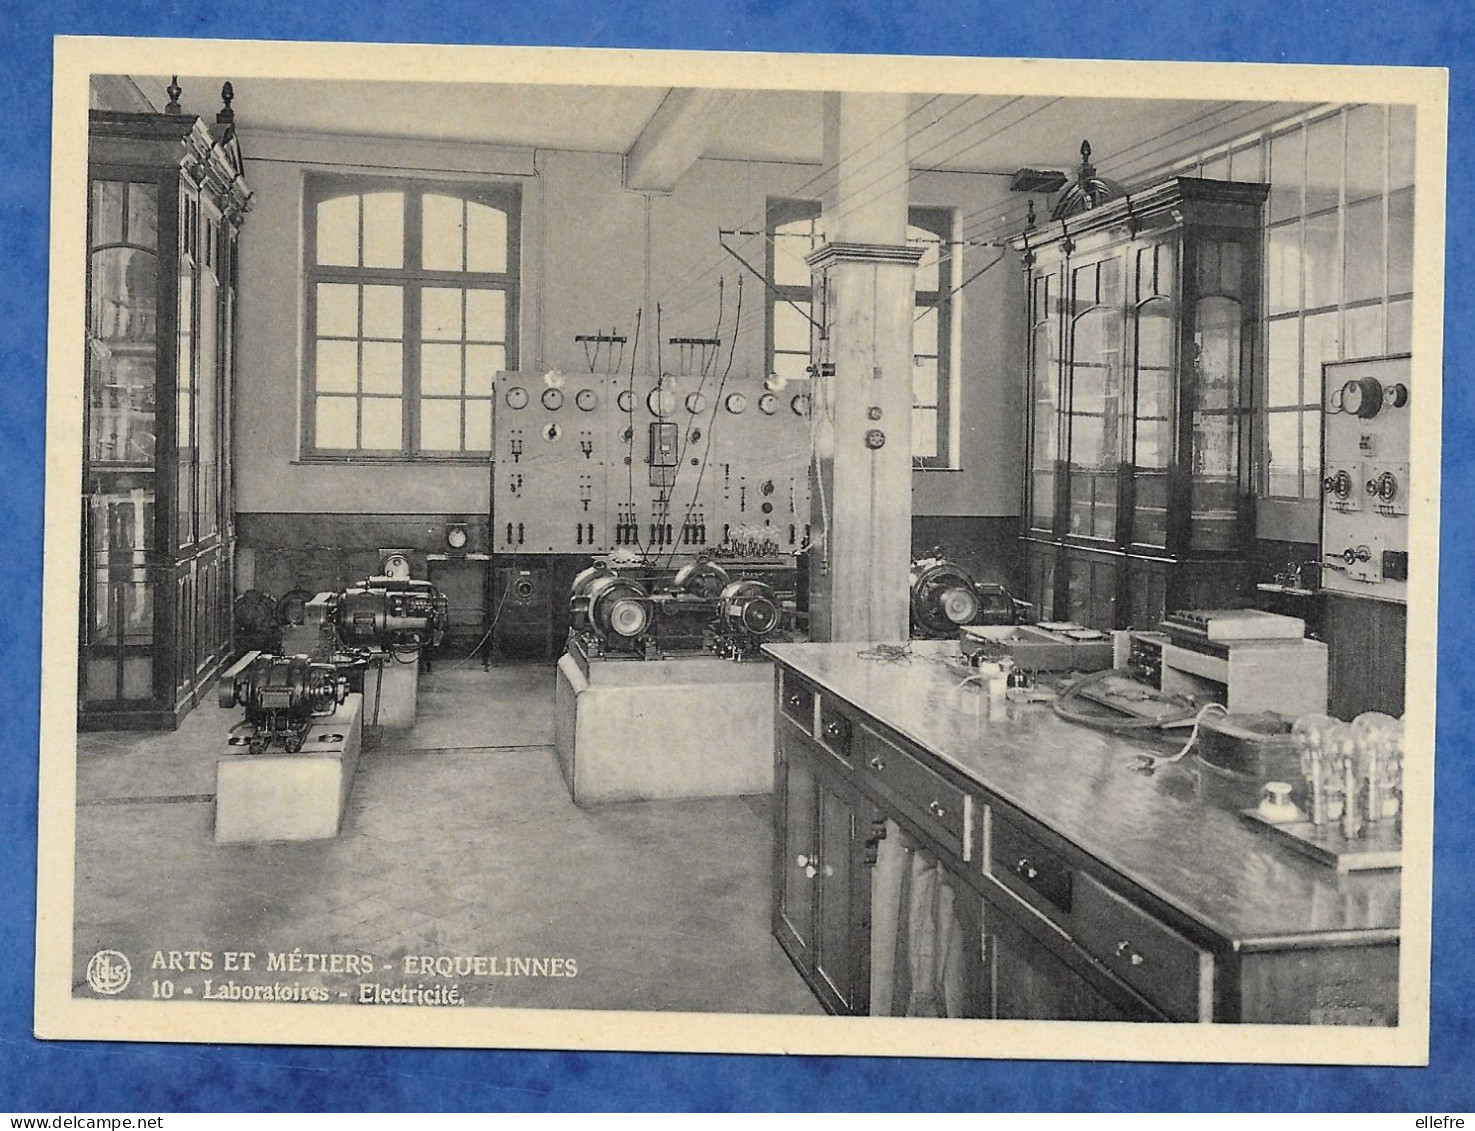 CPSM ERQUELINNES - Ecole Des Arts Et Métiers école Scientifique Laboratoire D' électricité 1936 Non écrite 10/15 Cm - Erquelinnes